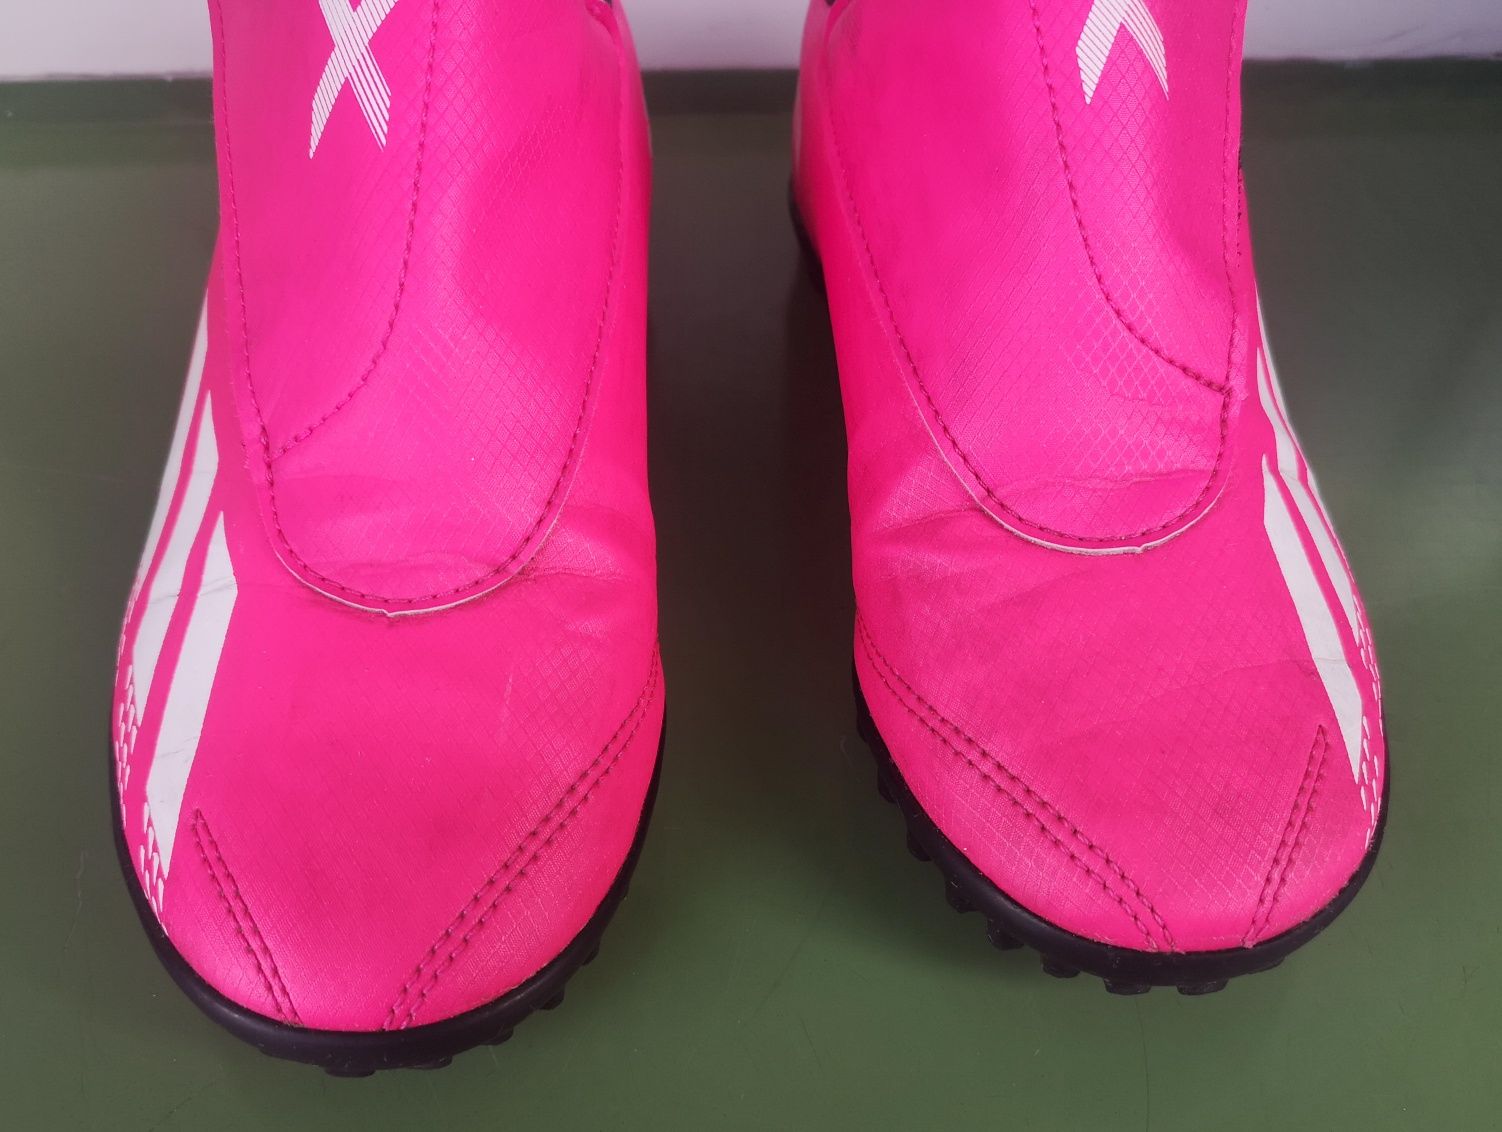 Buty piłkarskie do Piłki nożnej Korki Turfy na murawę Różowe r. 33,5